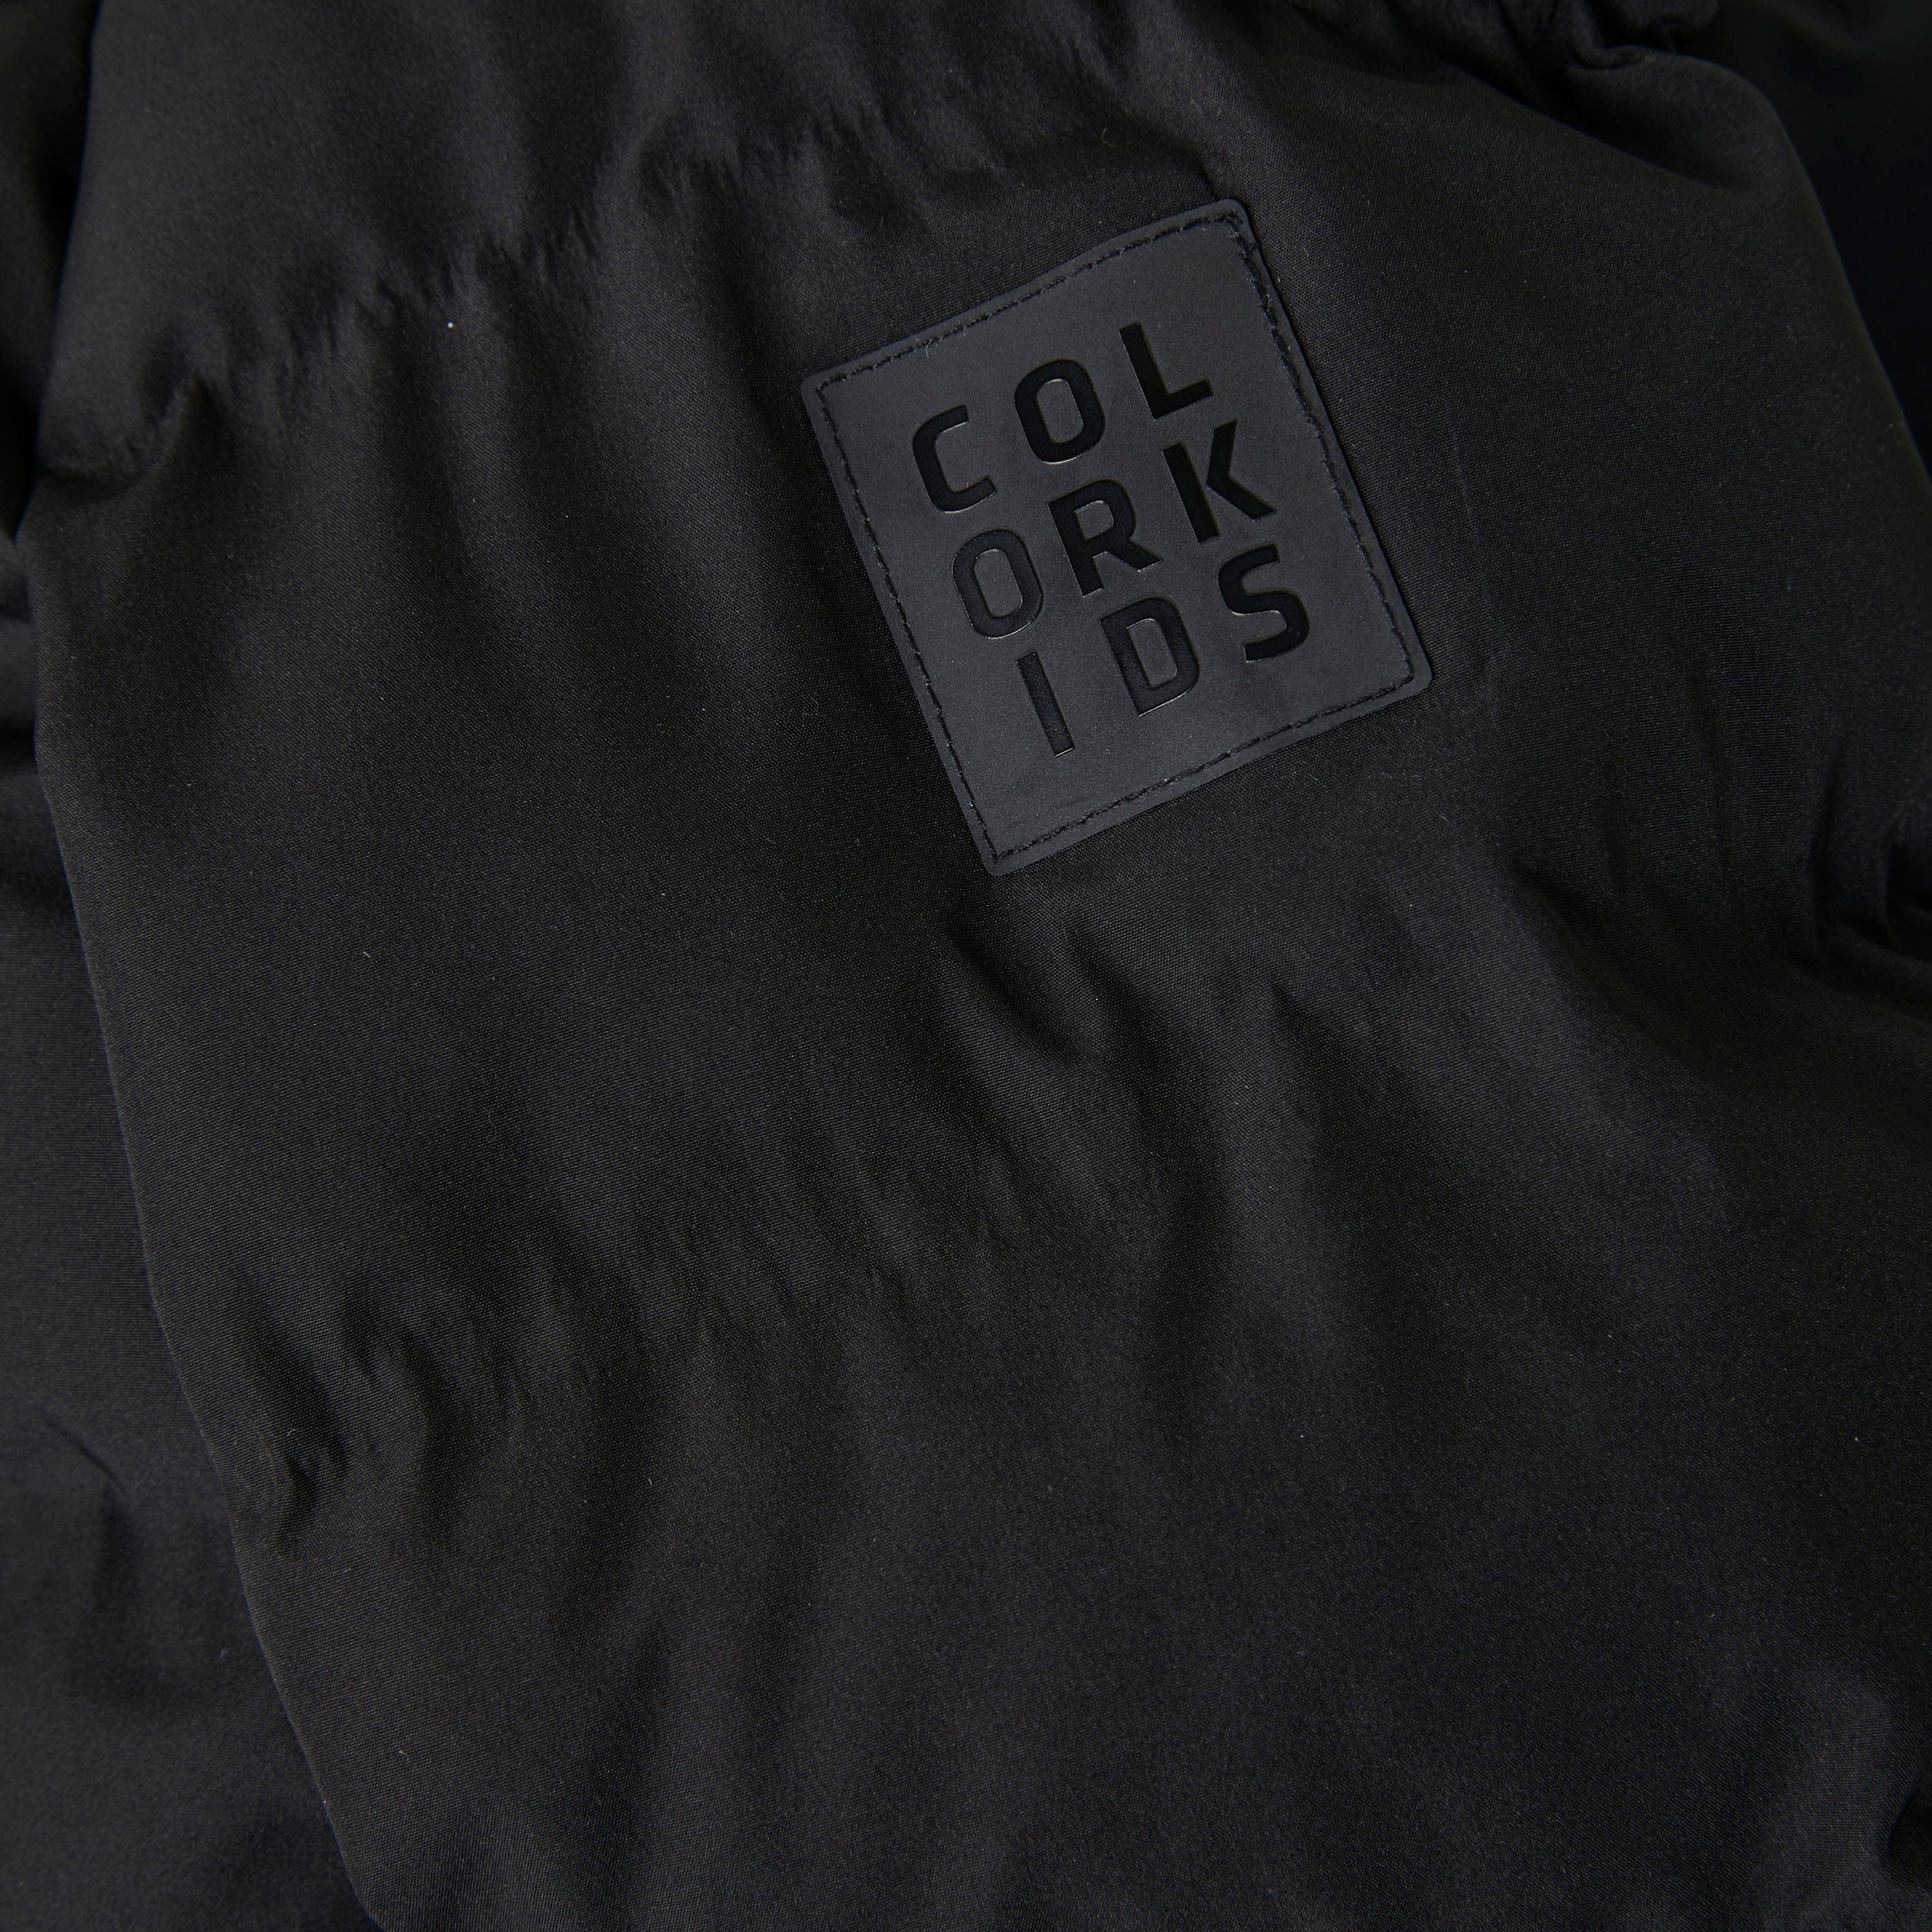 COLOR KIDS Skijacke COJr. Black - Jacket (1191) 741136 Quilt